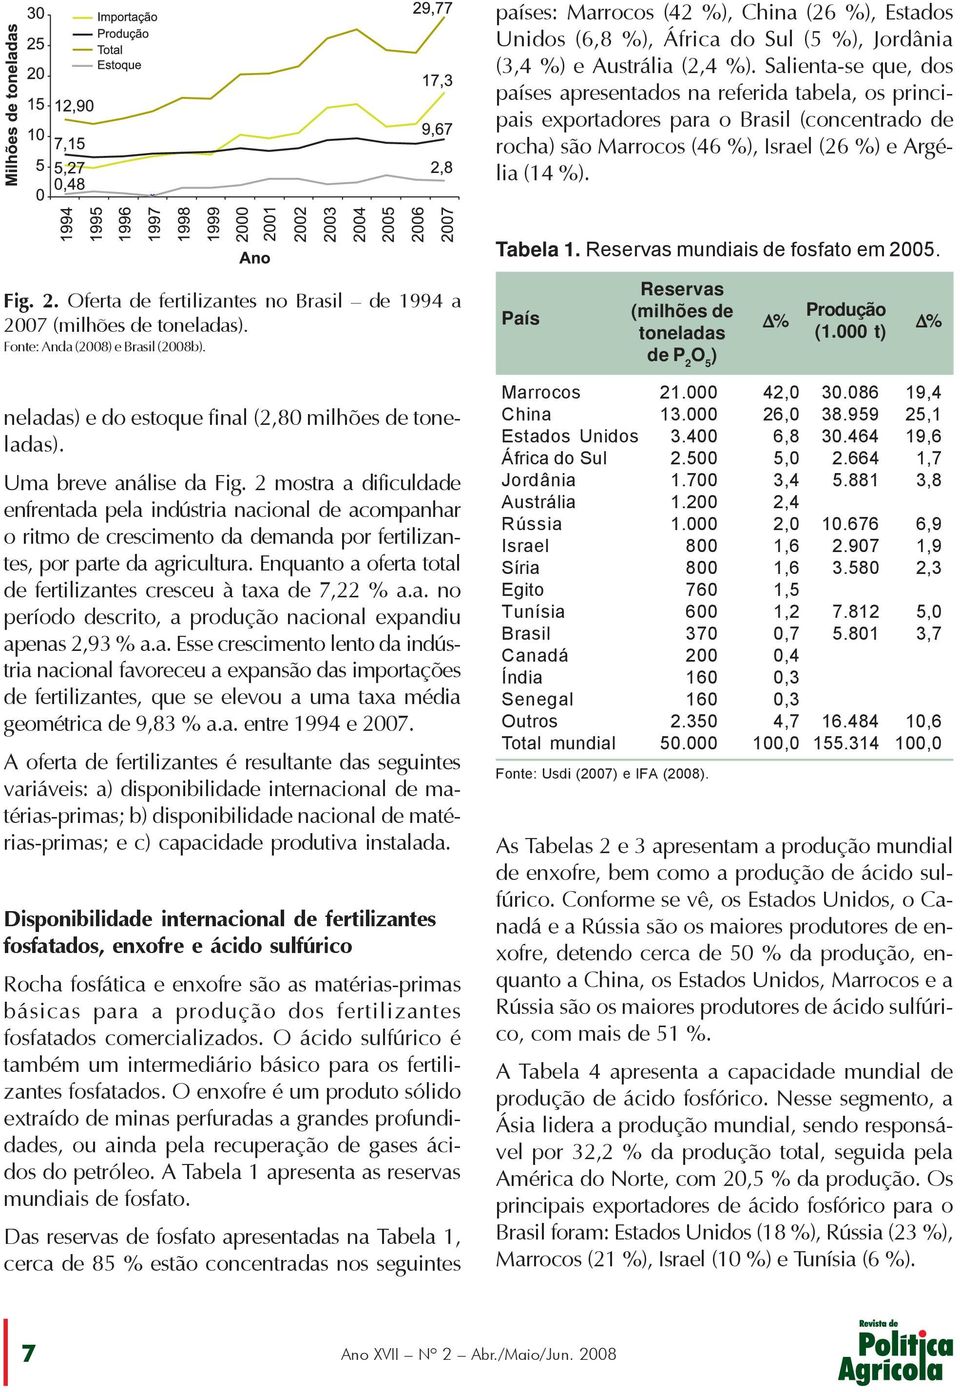 Reservas mundiais de fosfato em 2005. Fig. 2. Oferta de fertilizantes no Brasil de 1994 a 2007 (milhões de toneladas). Fonte: Anda (2008) e Brasil (2008b).